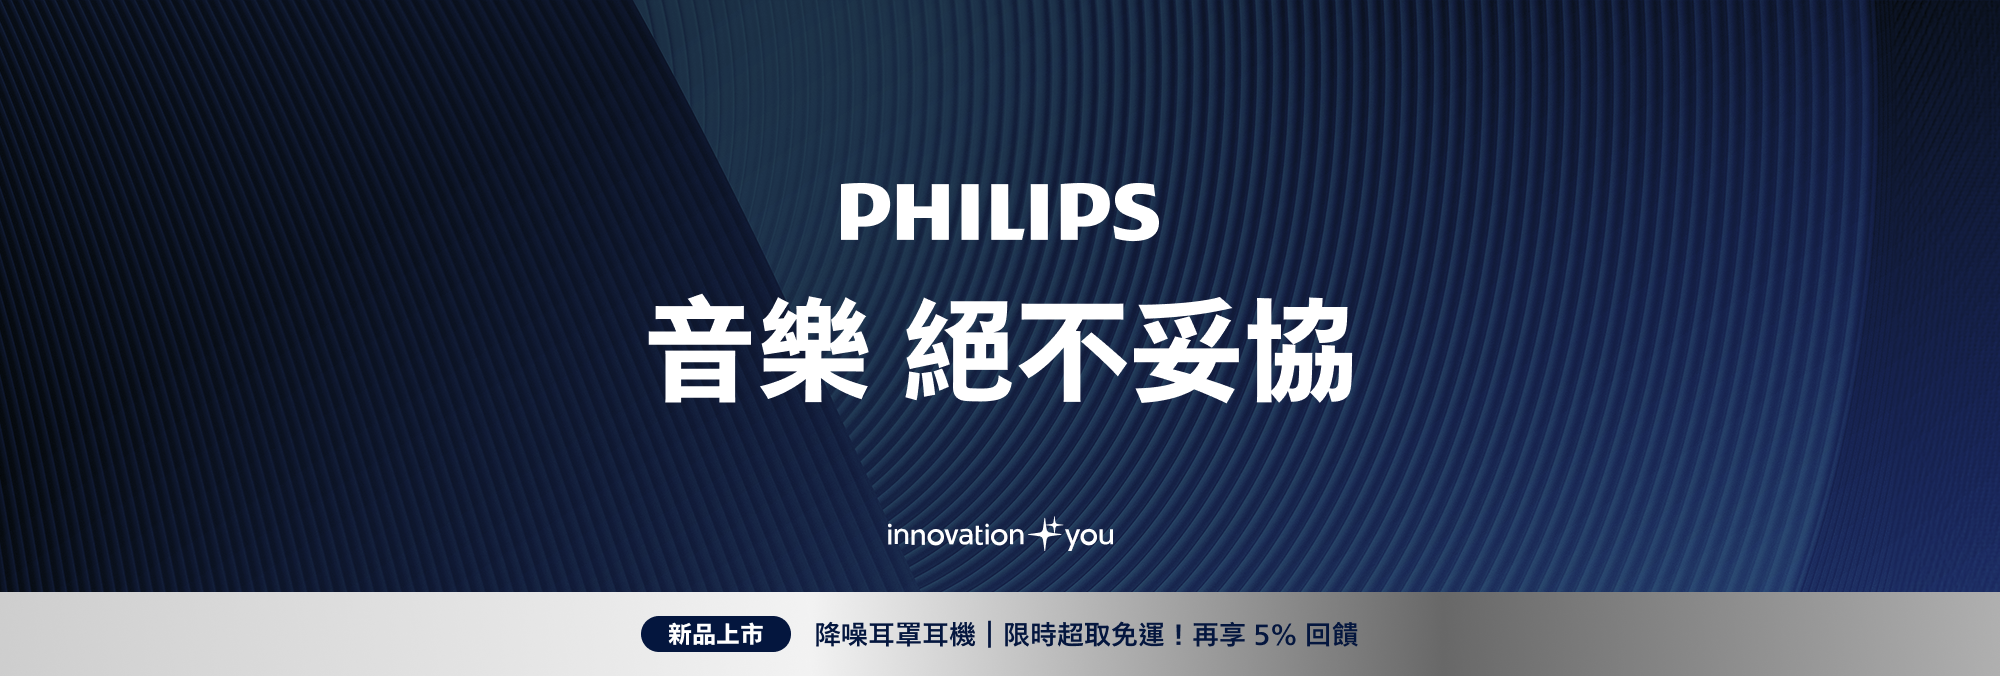 Philips 歐洲百年消費電子領導品牌